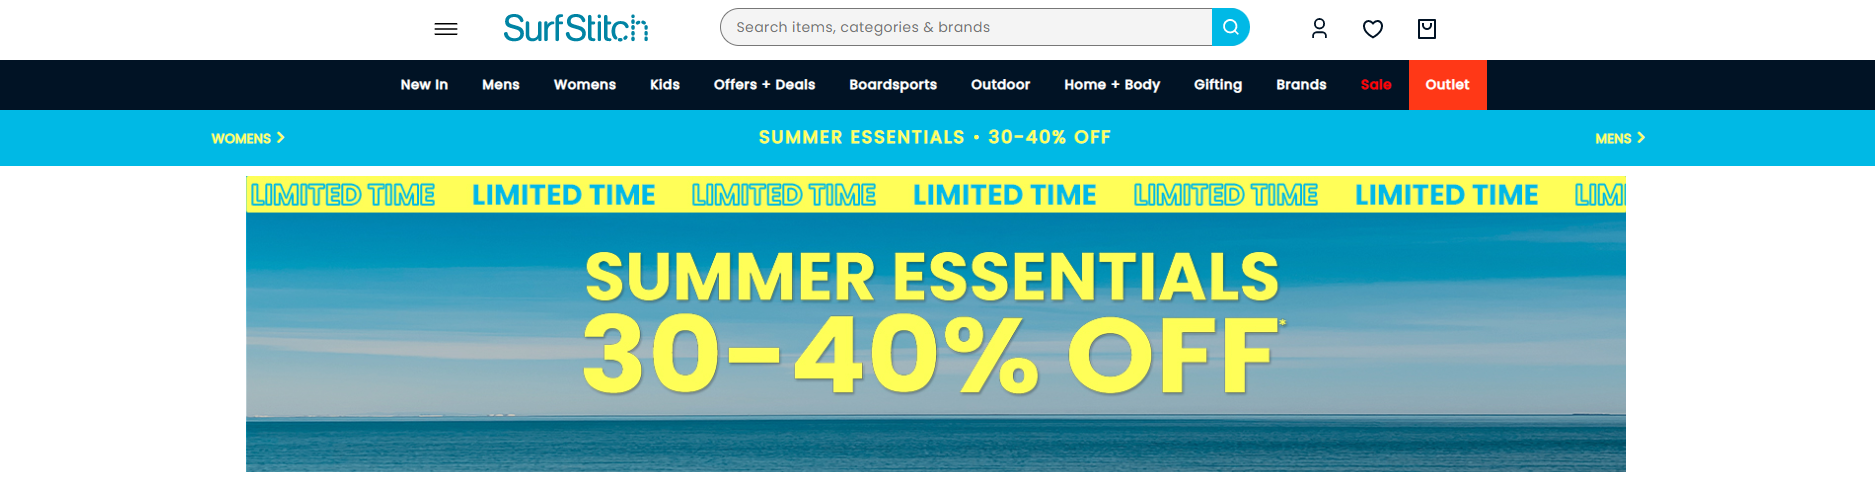 30-40% OFF Summer essentials for men, women & kids @ Surfstitch, Free delivery $75+